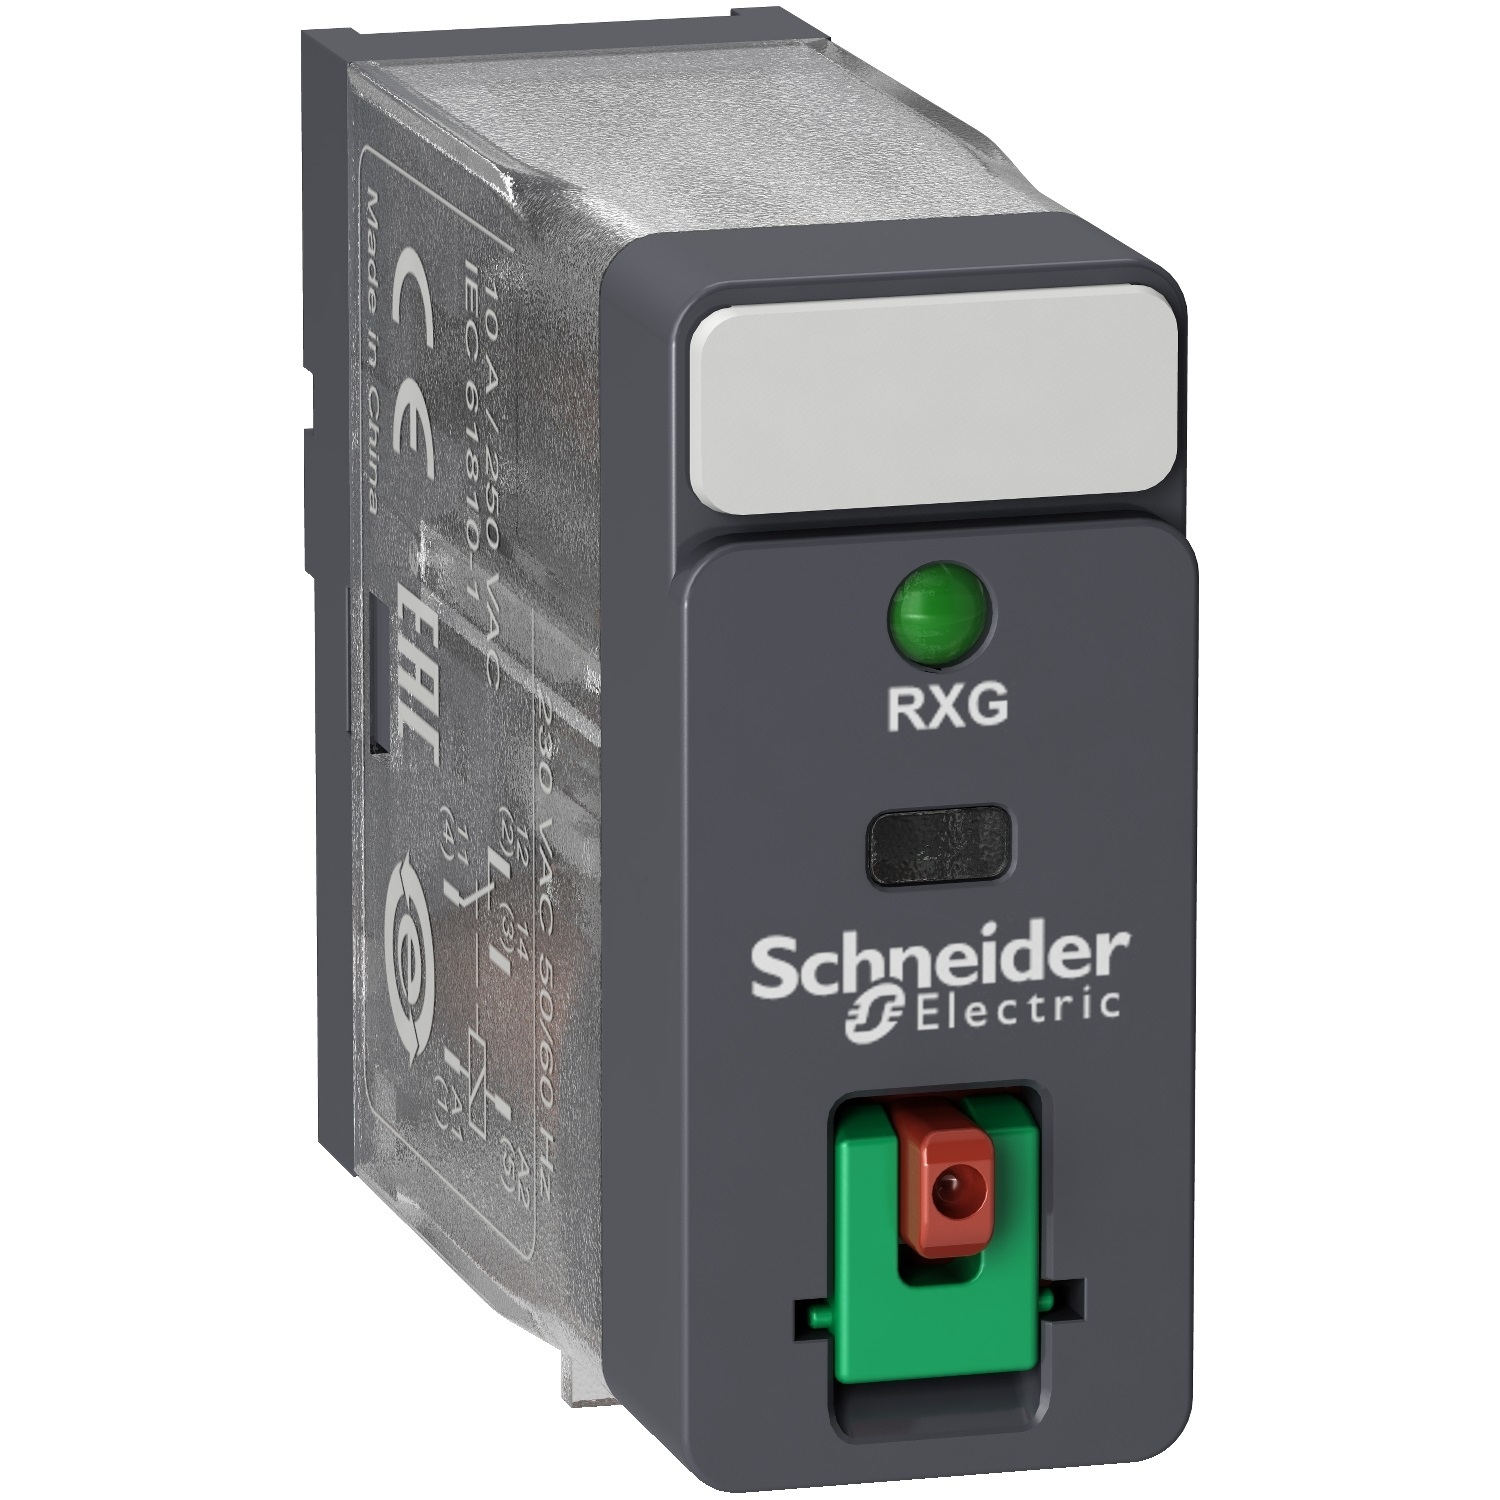 Schneider 24VAC 2 Pole Relay 5A SPDT w/ Indicator & Test Button